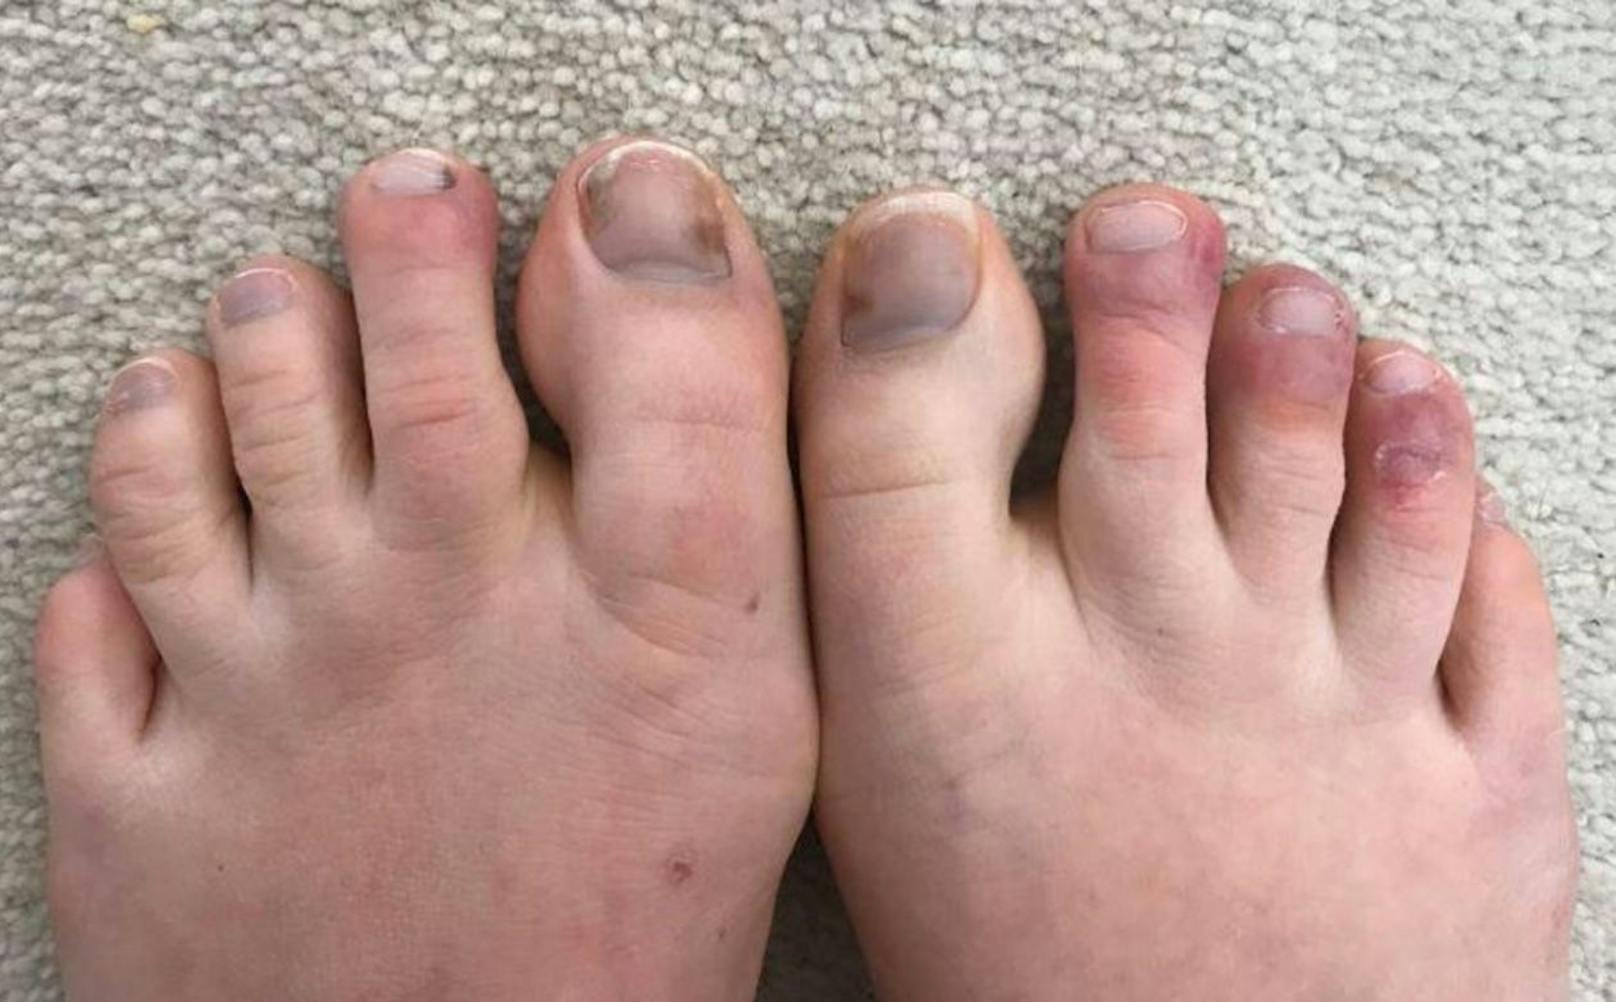 In mehreren Ländern sind bei Hautärzten vermehrt Menschen mit frostbeulenartigen Schwellungen an Zehen, Füßen oder Fingern aufgetaucht.